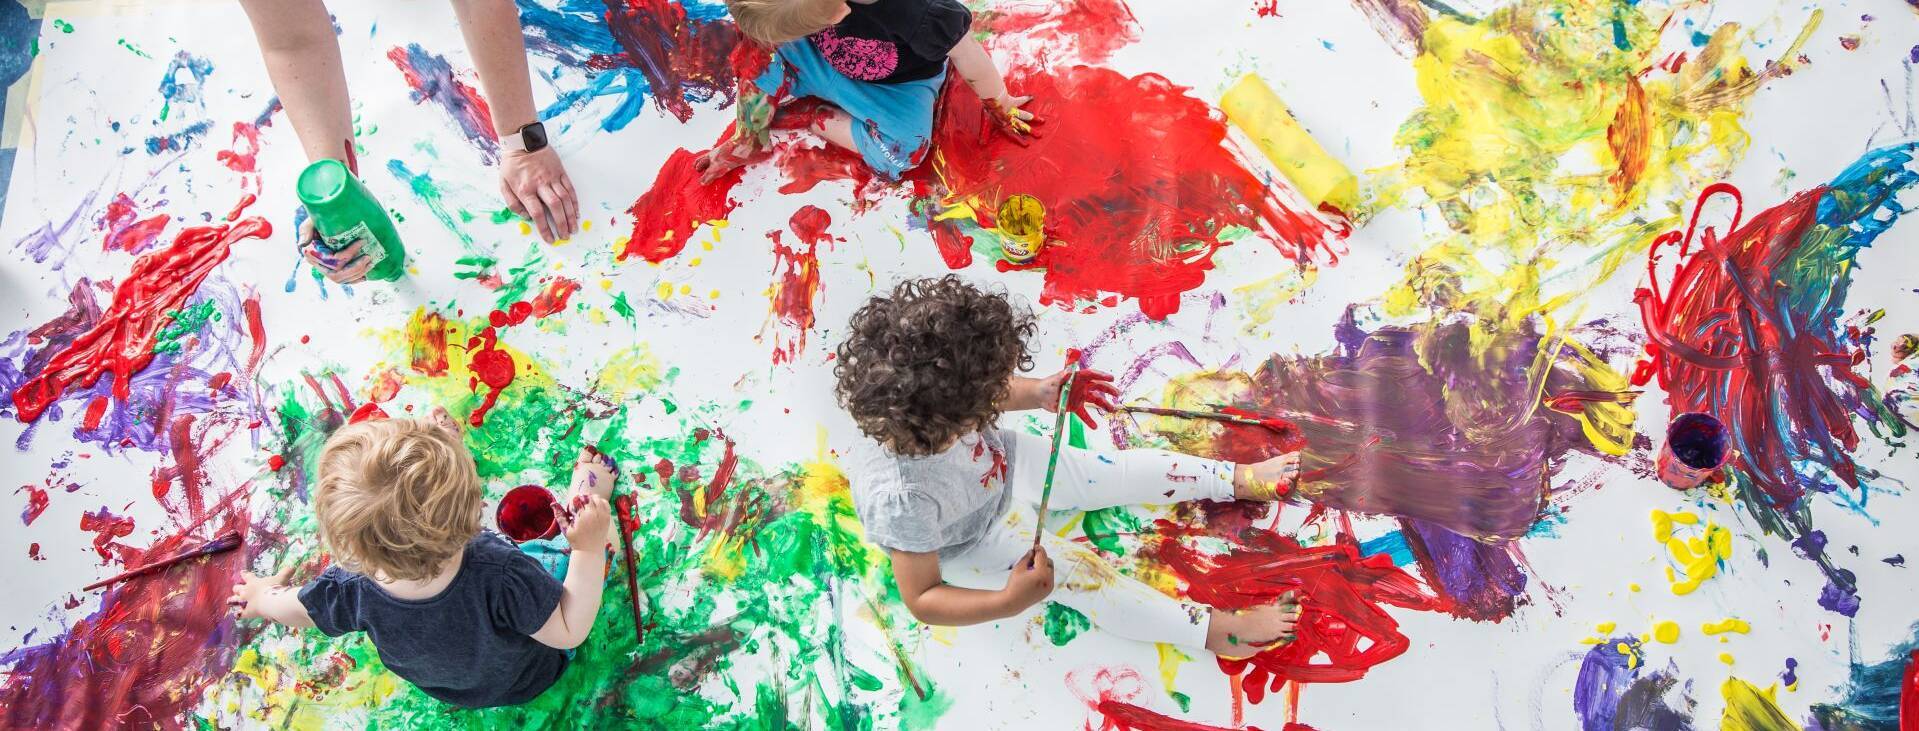 Eine Gruppe von kleinen Kinder spielt mit Fingerfarben auf einem großen Blatt.